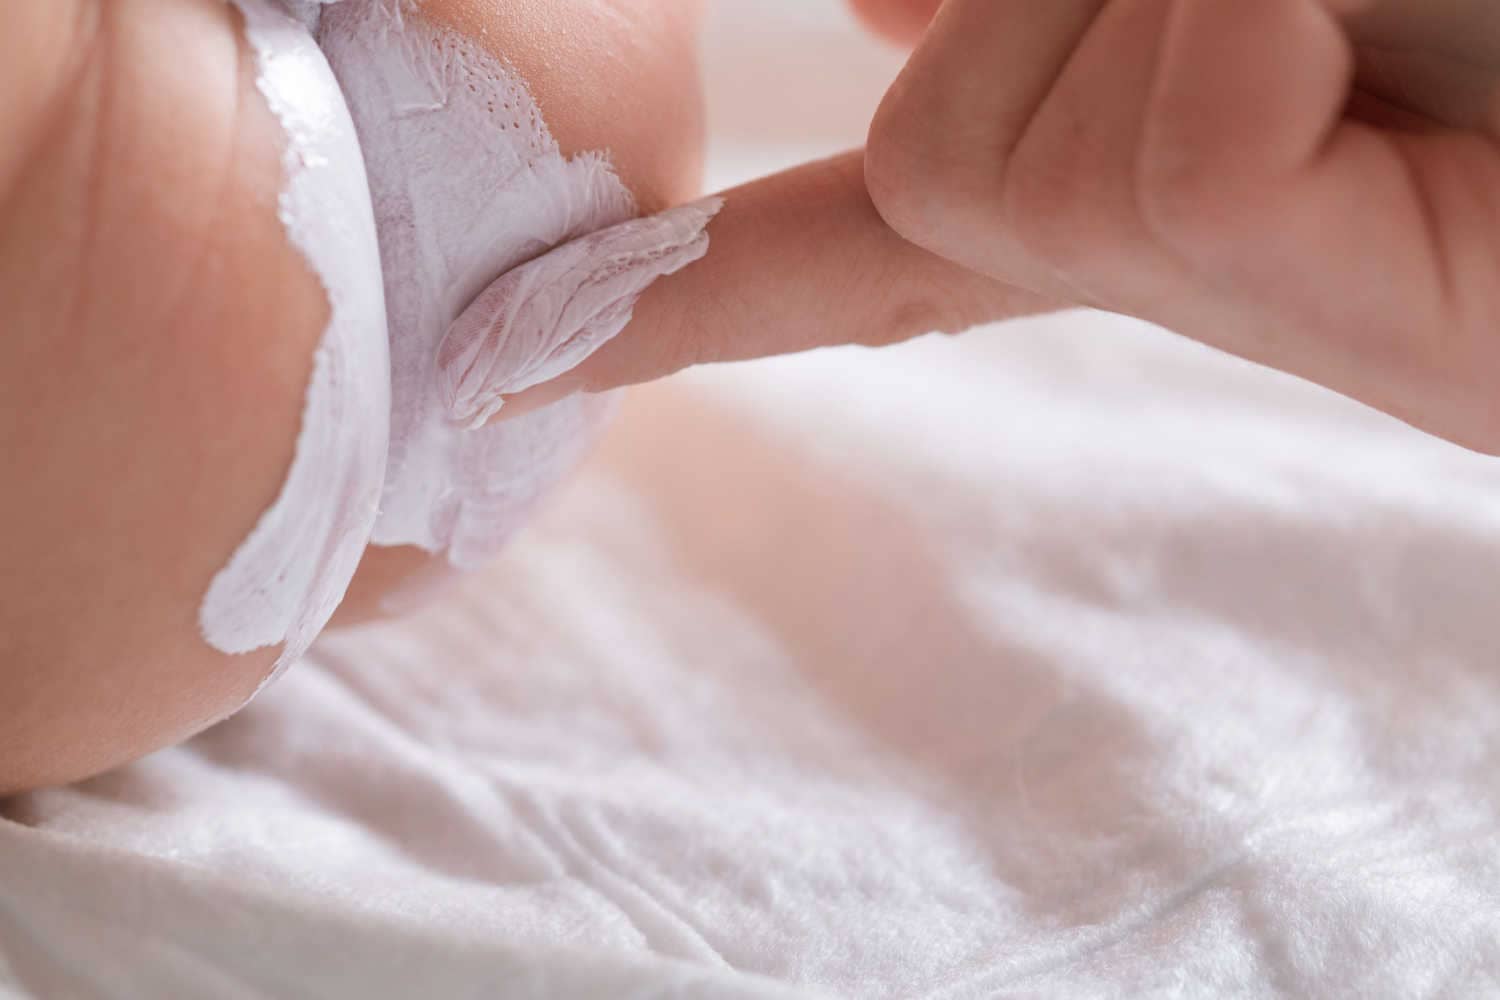 Treating diaper rash